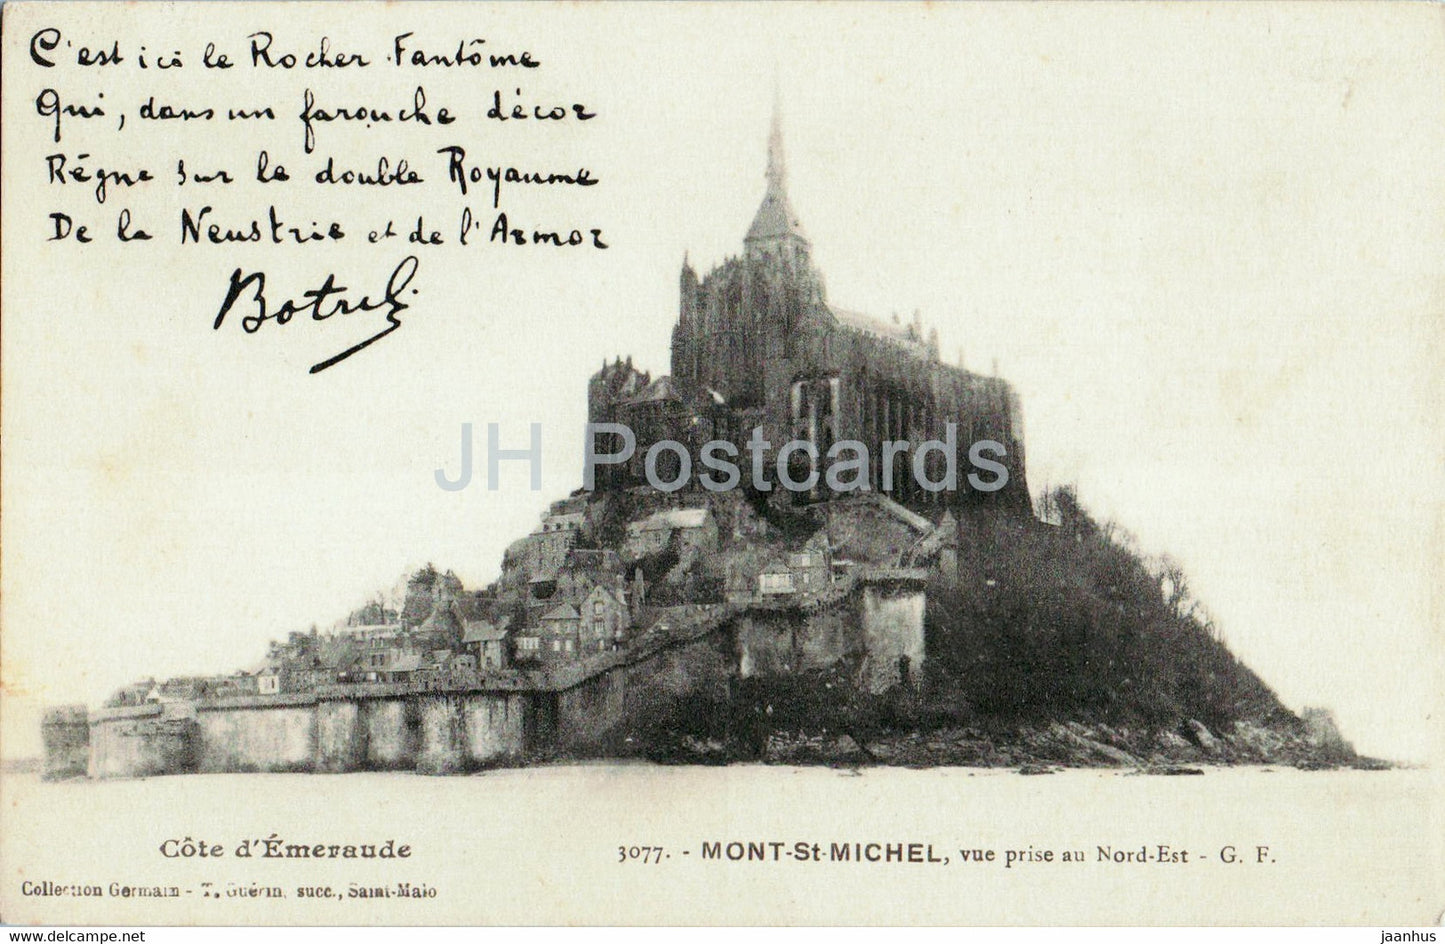 Le Mont Saint Michel - Vue prise au Nord Est - 3077 - old postcard - France - unused - JH Postcards